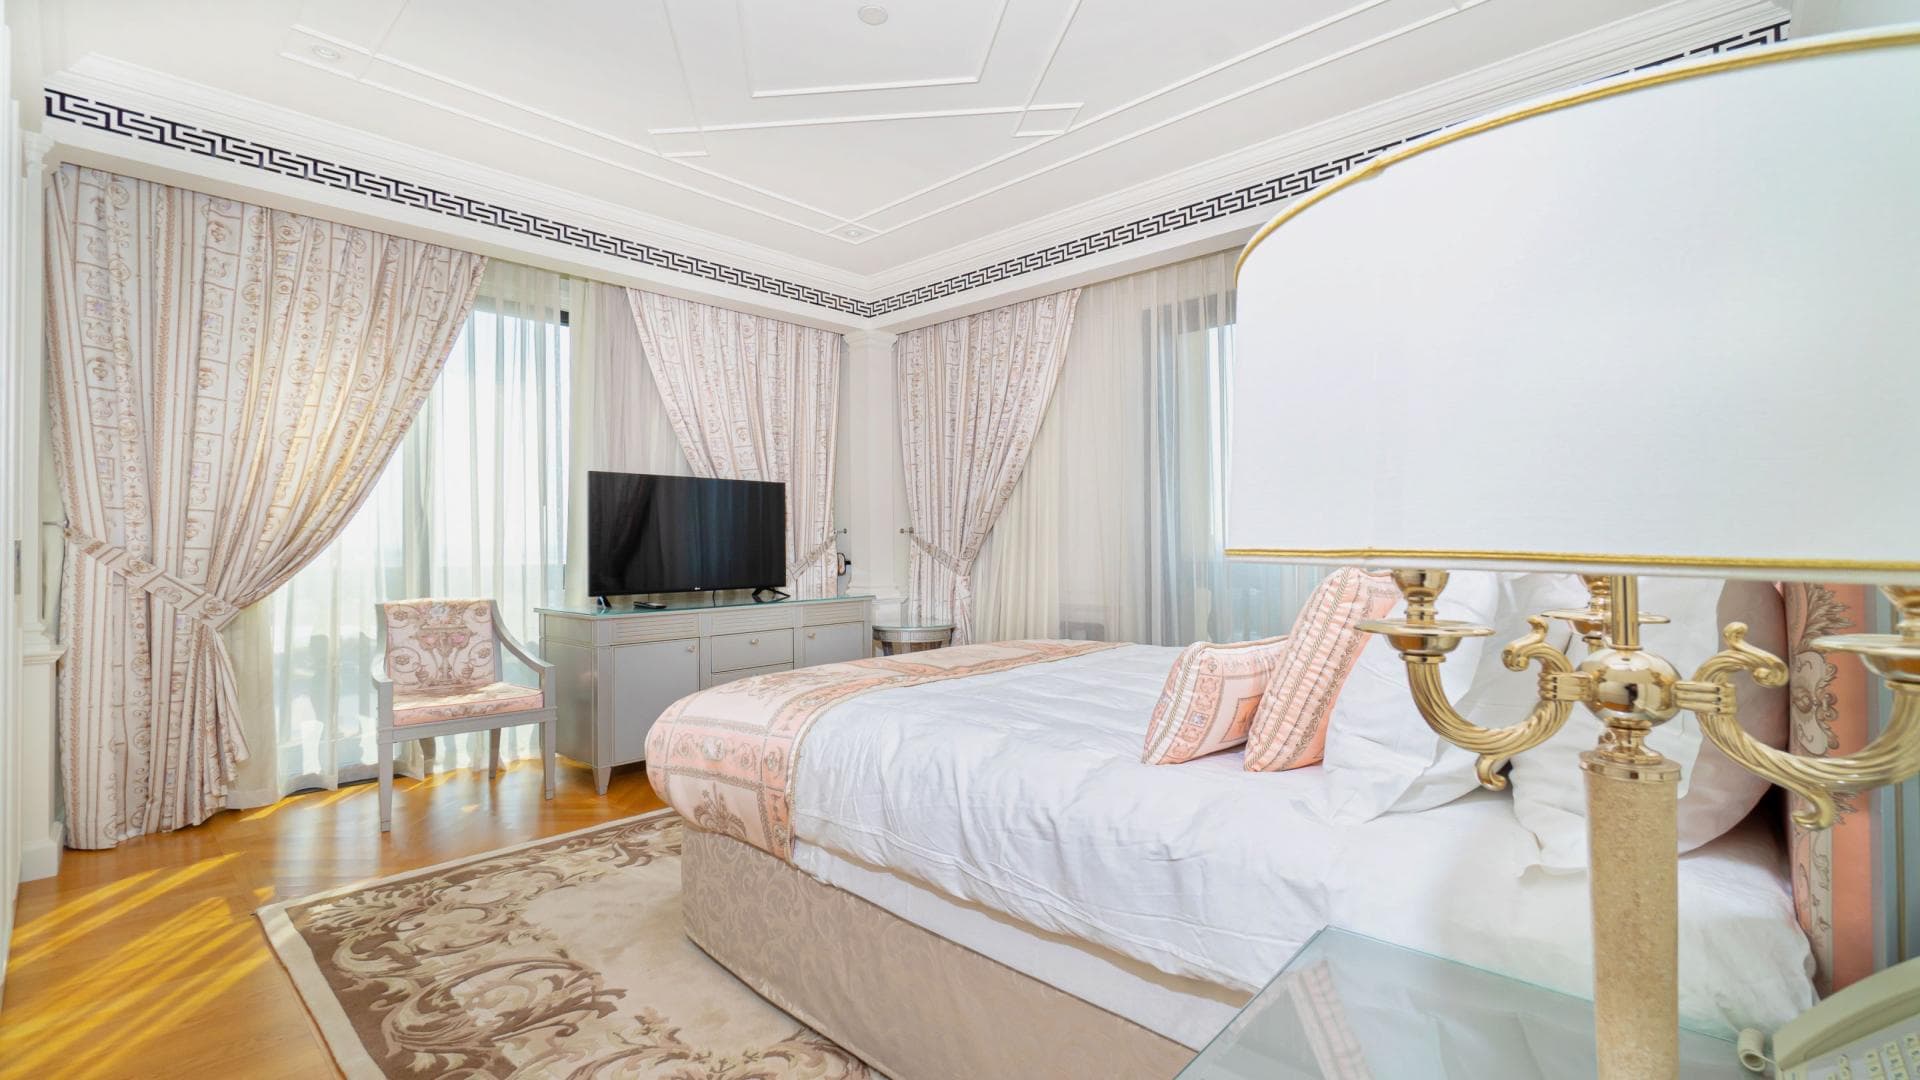 2 Bedroom Apartment For Rent Sadaf 7 Lp36800 7d1f43747246c80.jpeg